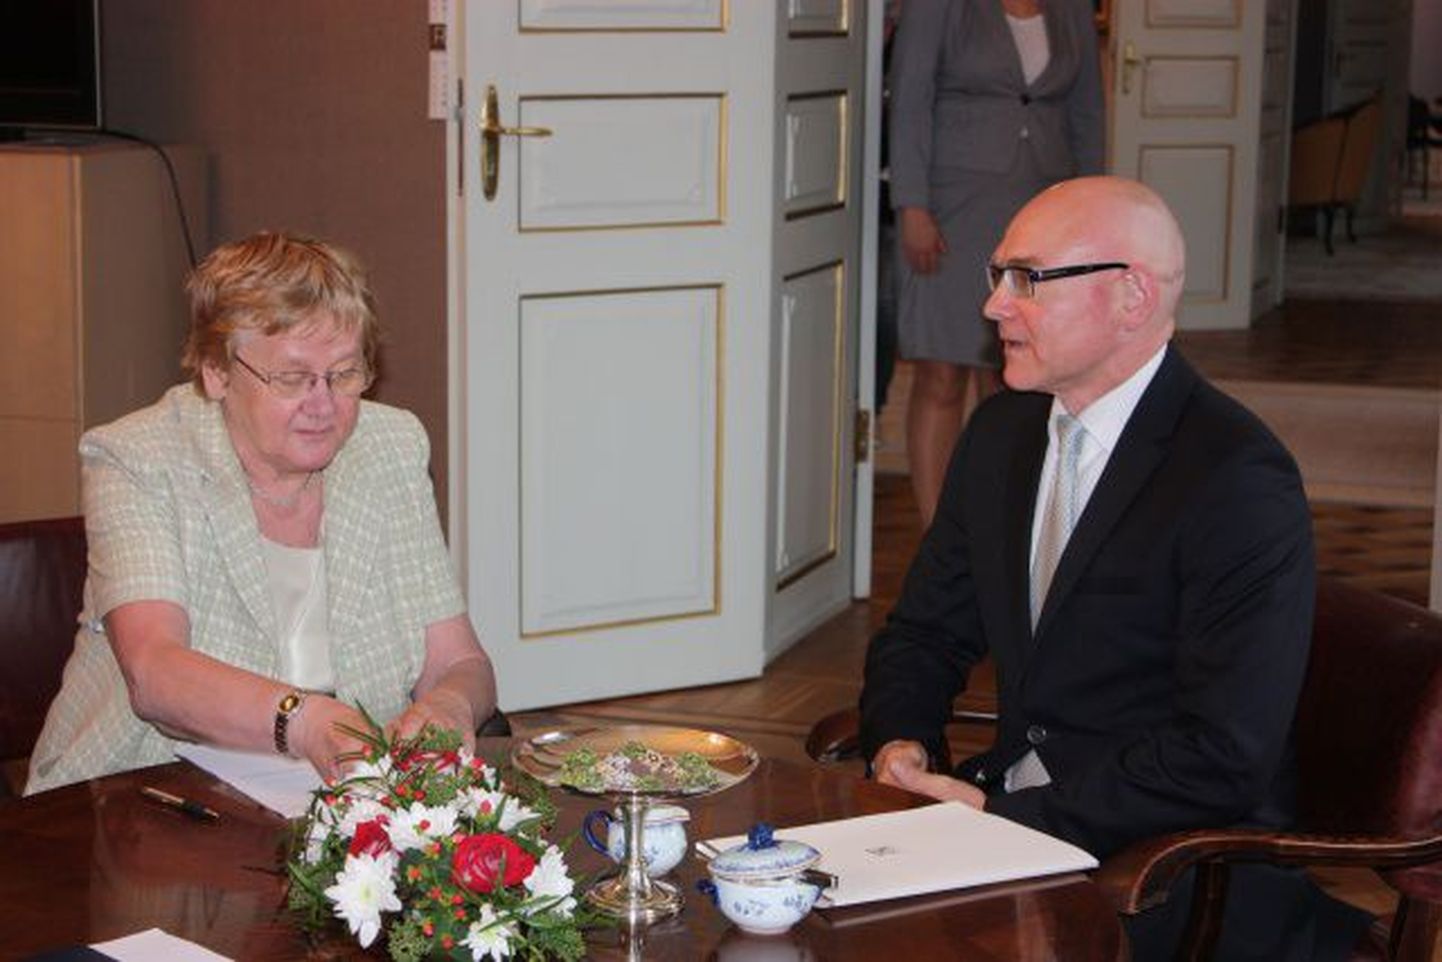 Õiguskantsler Indrek Teder andis riigikogu esimehele Ene Ergmale oma 2010. aasta tegevuse ülevaate.